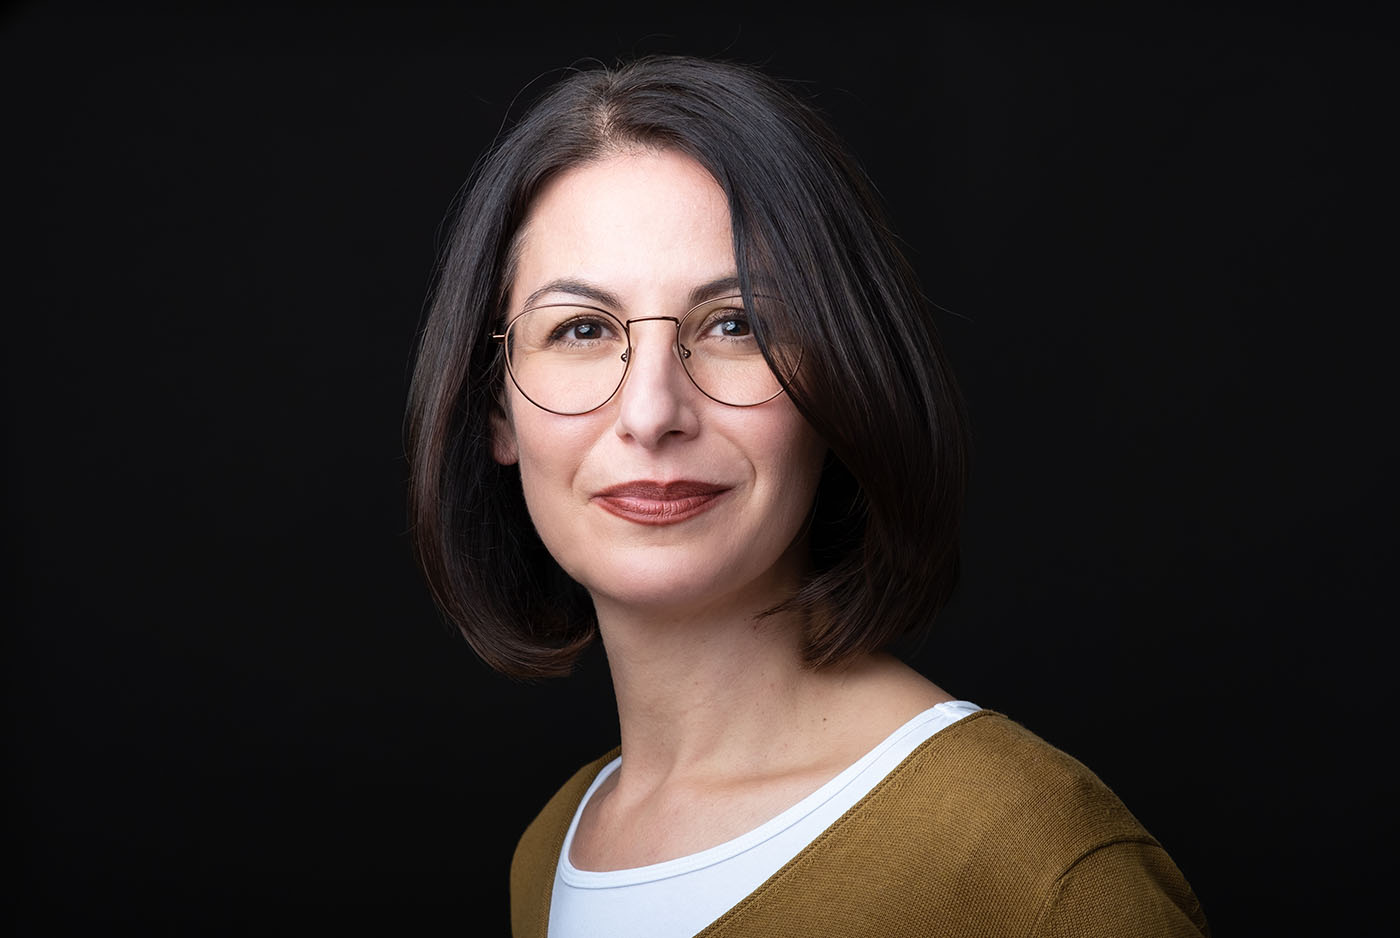 Bewerbungsfoto einer Frau mit buntem Pullover und Brille vor schwarzem Hintergrund, aufgenommen im Fotostudio KARRIEREPORTRAITS in Dortmund